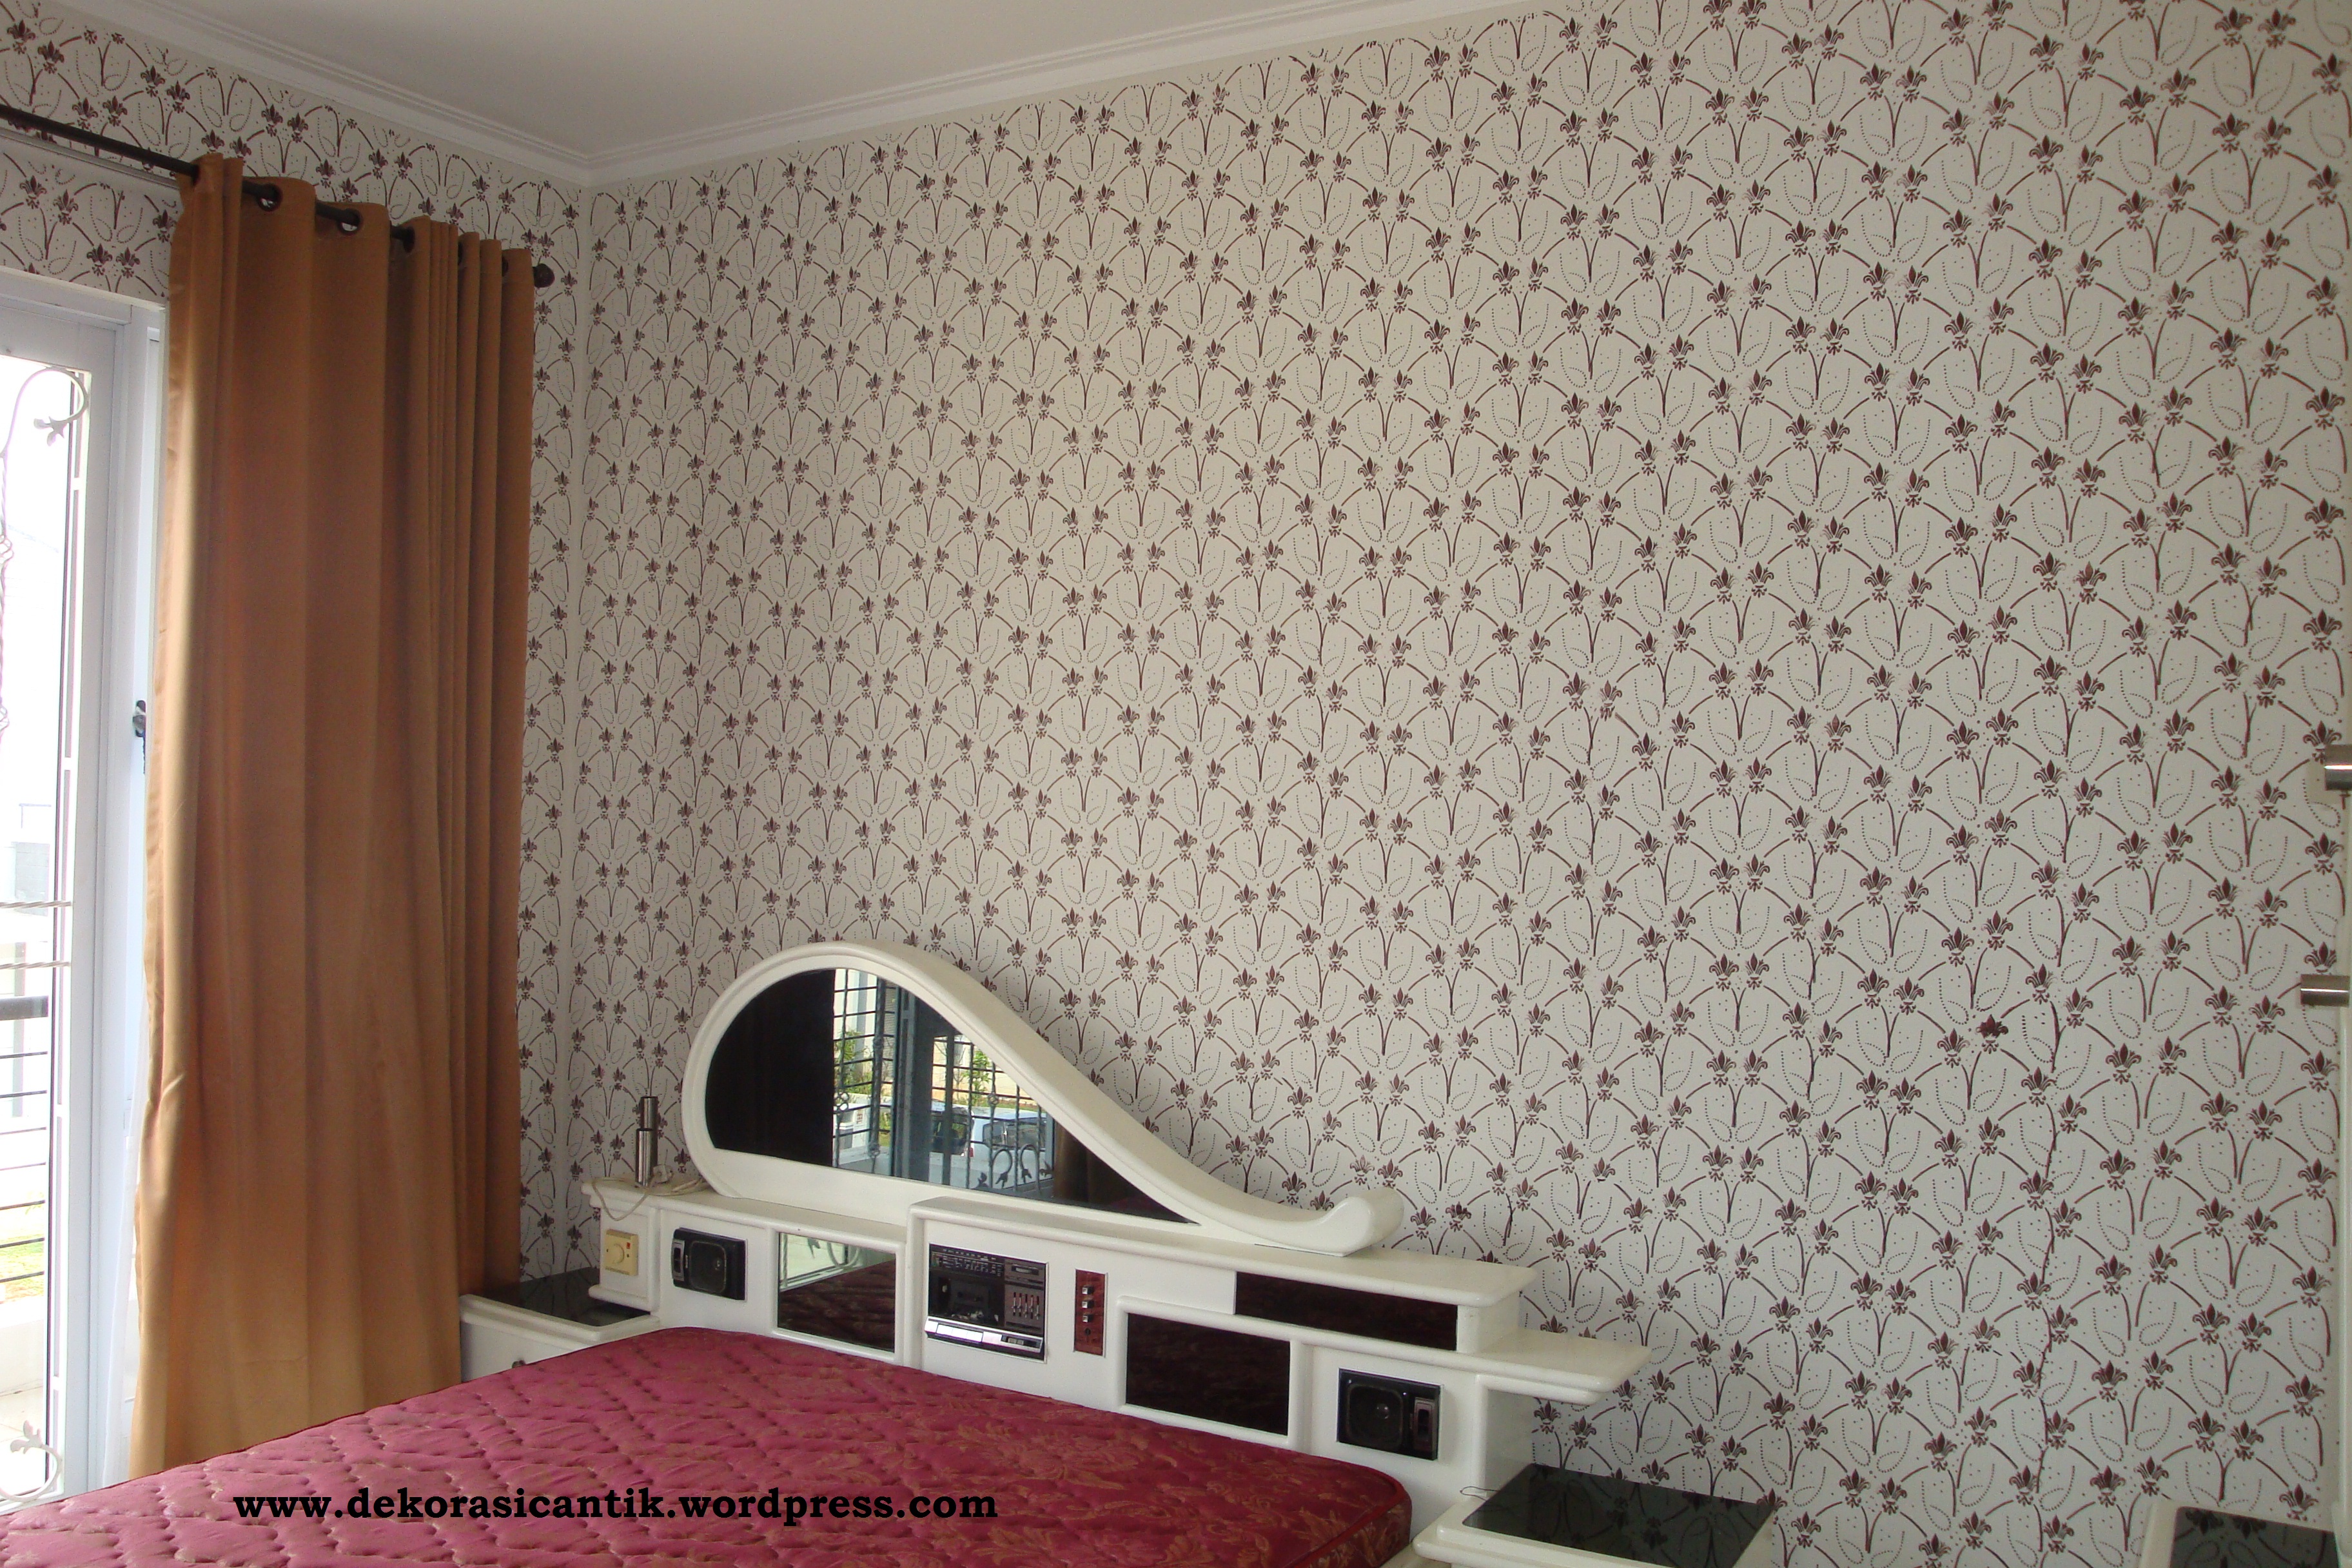 Dekorasi Cantik Wall Printing Wallpaper Design Interior